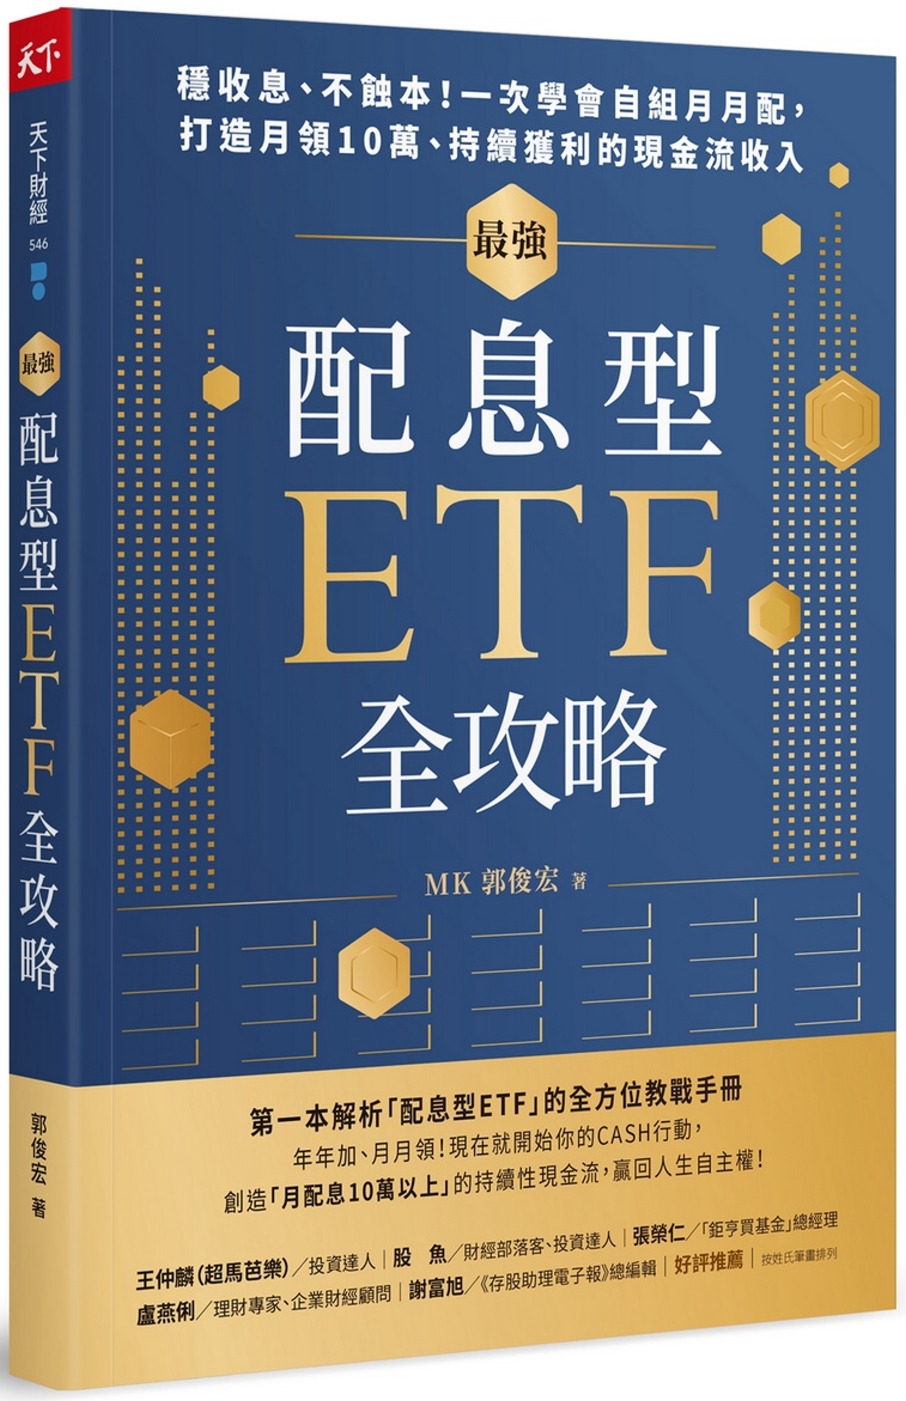 [電子書]最強配息型ETF全攻略：穩收息、不蝕本！一次學會自組月月配， 打造月領10萬、持續獲利的現金流收入